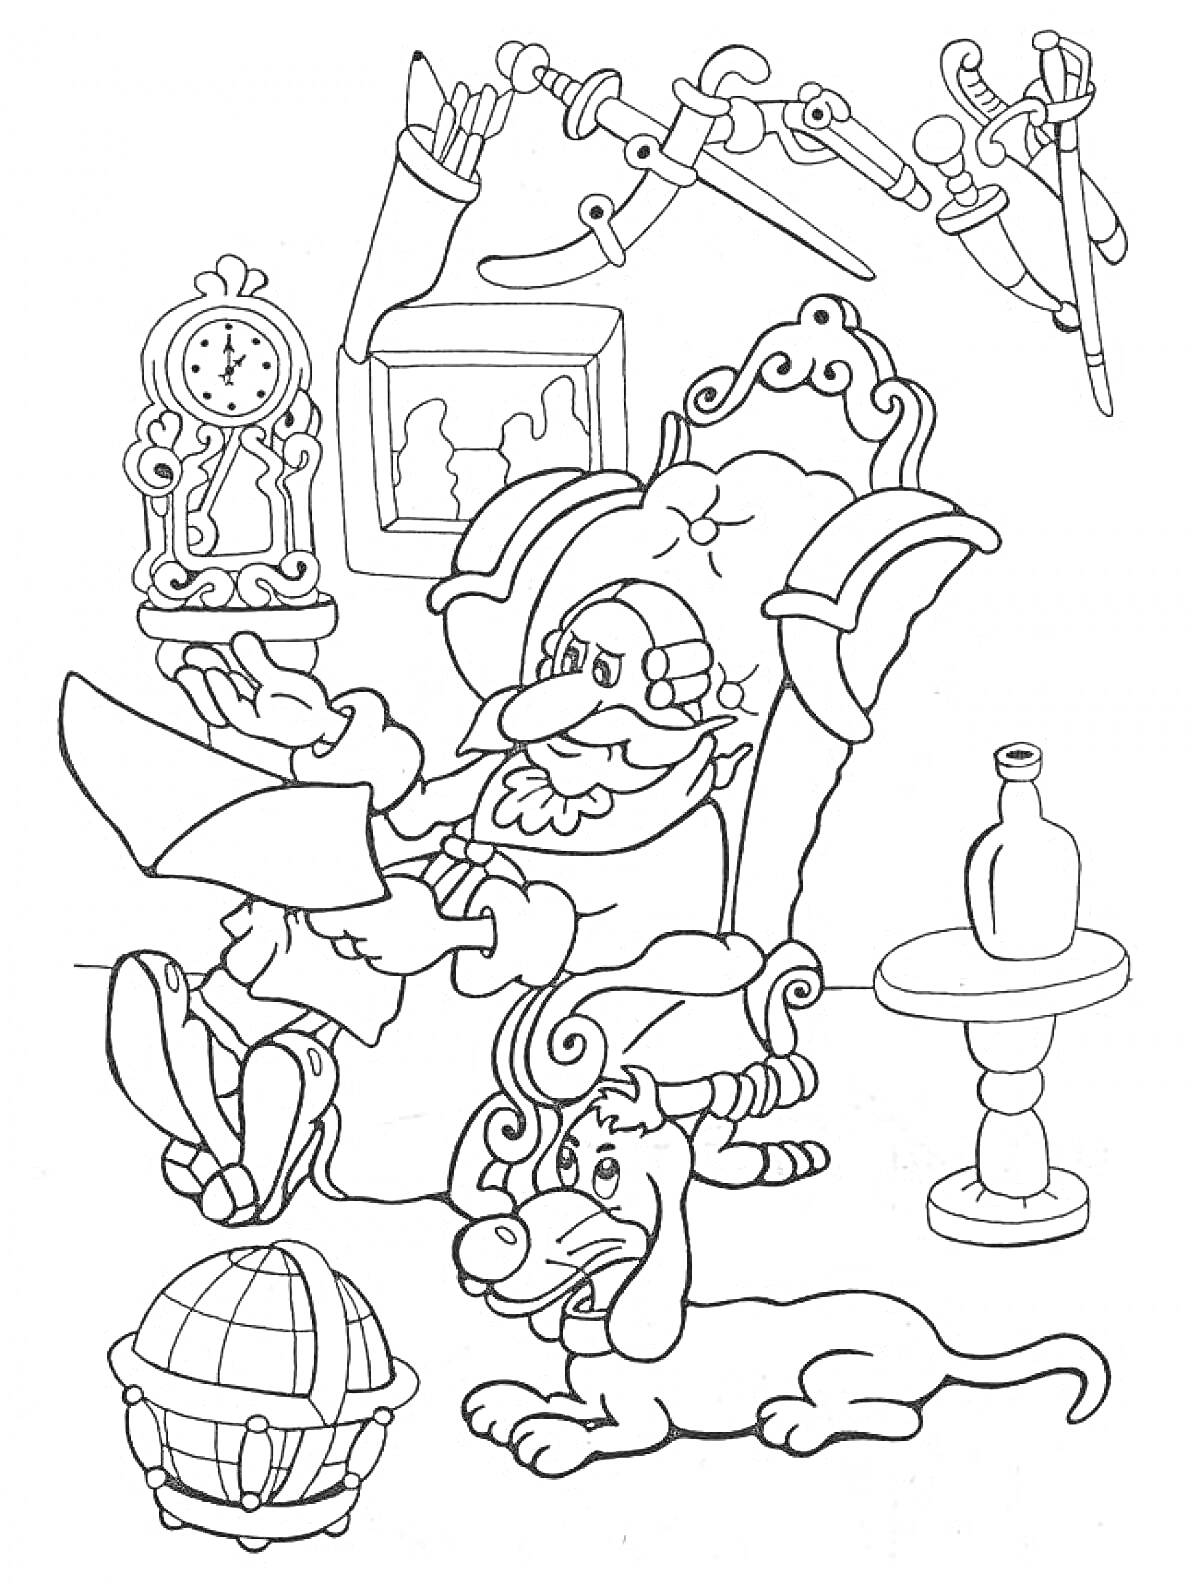 Барон Мюнхгаузен сидит в кресле с собакой, держа карту и окруженный часами, бутылкой на столе, глобусом и мечами на стене